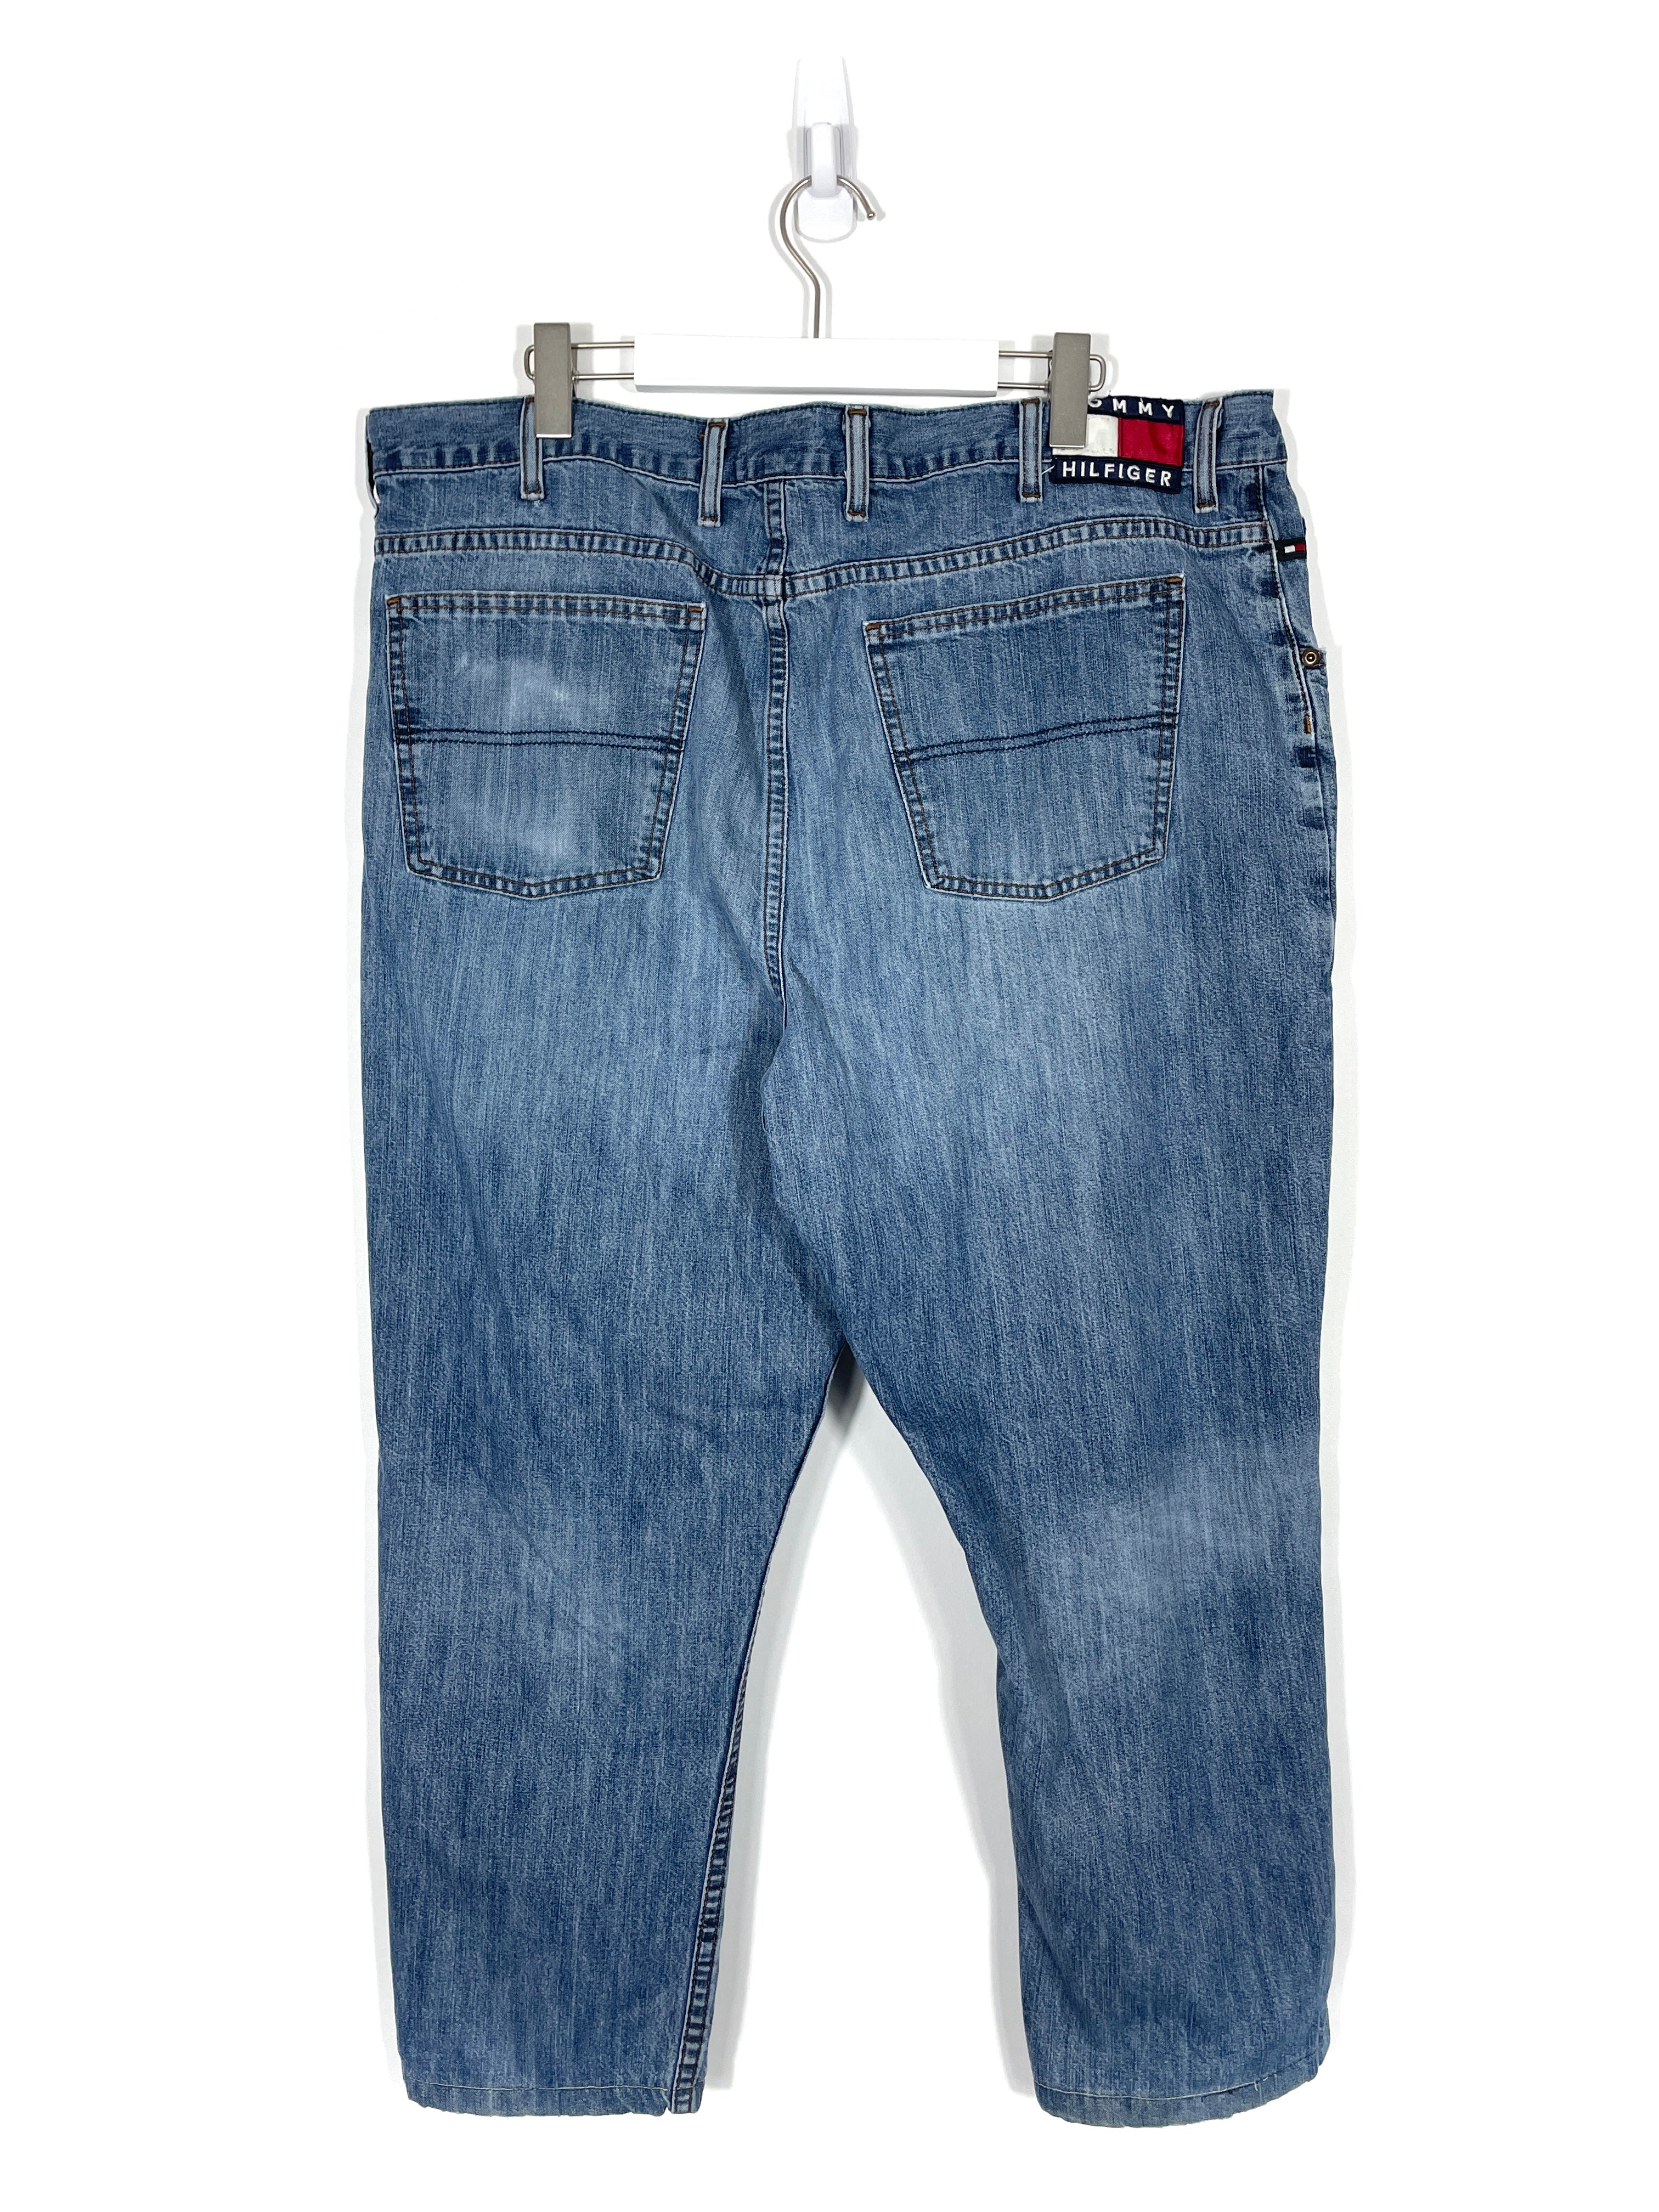 Vintage Tommy Hilfiger Baggy Jeans - Men's 42x32